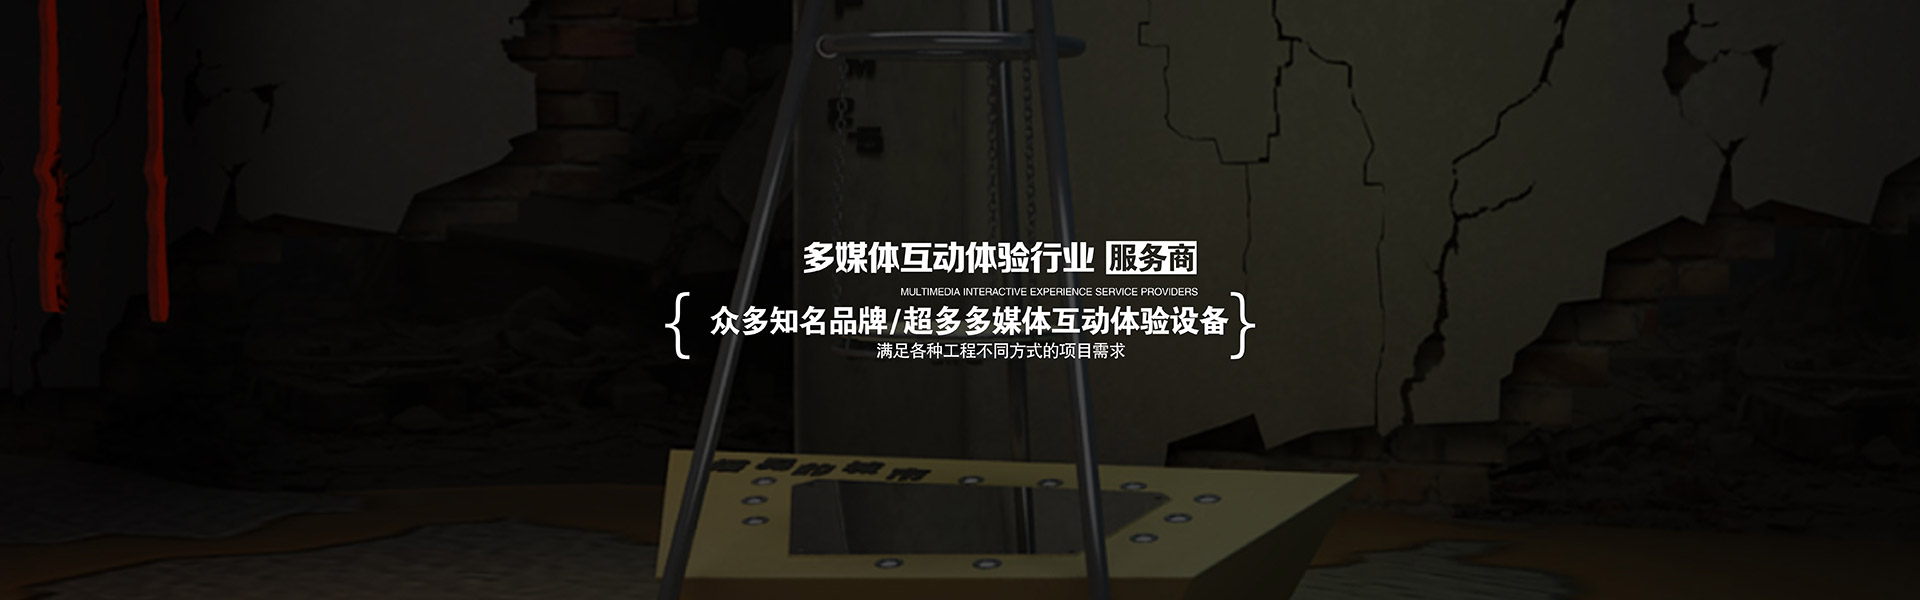 球幕影院刘徽海岛算经机电互动数字媒体